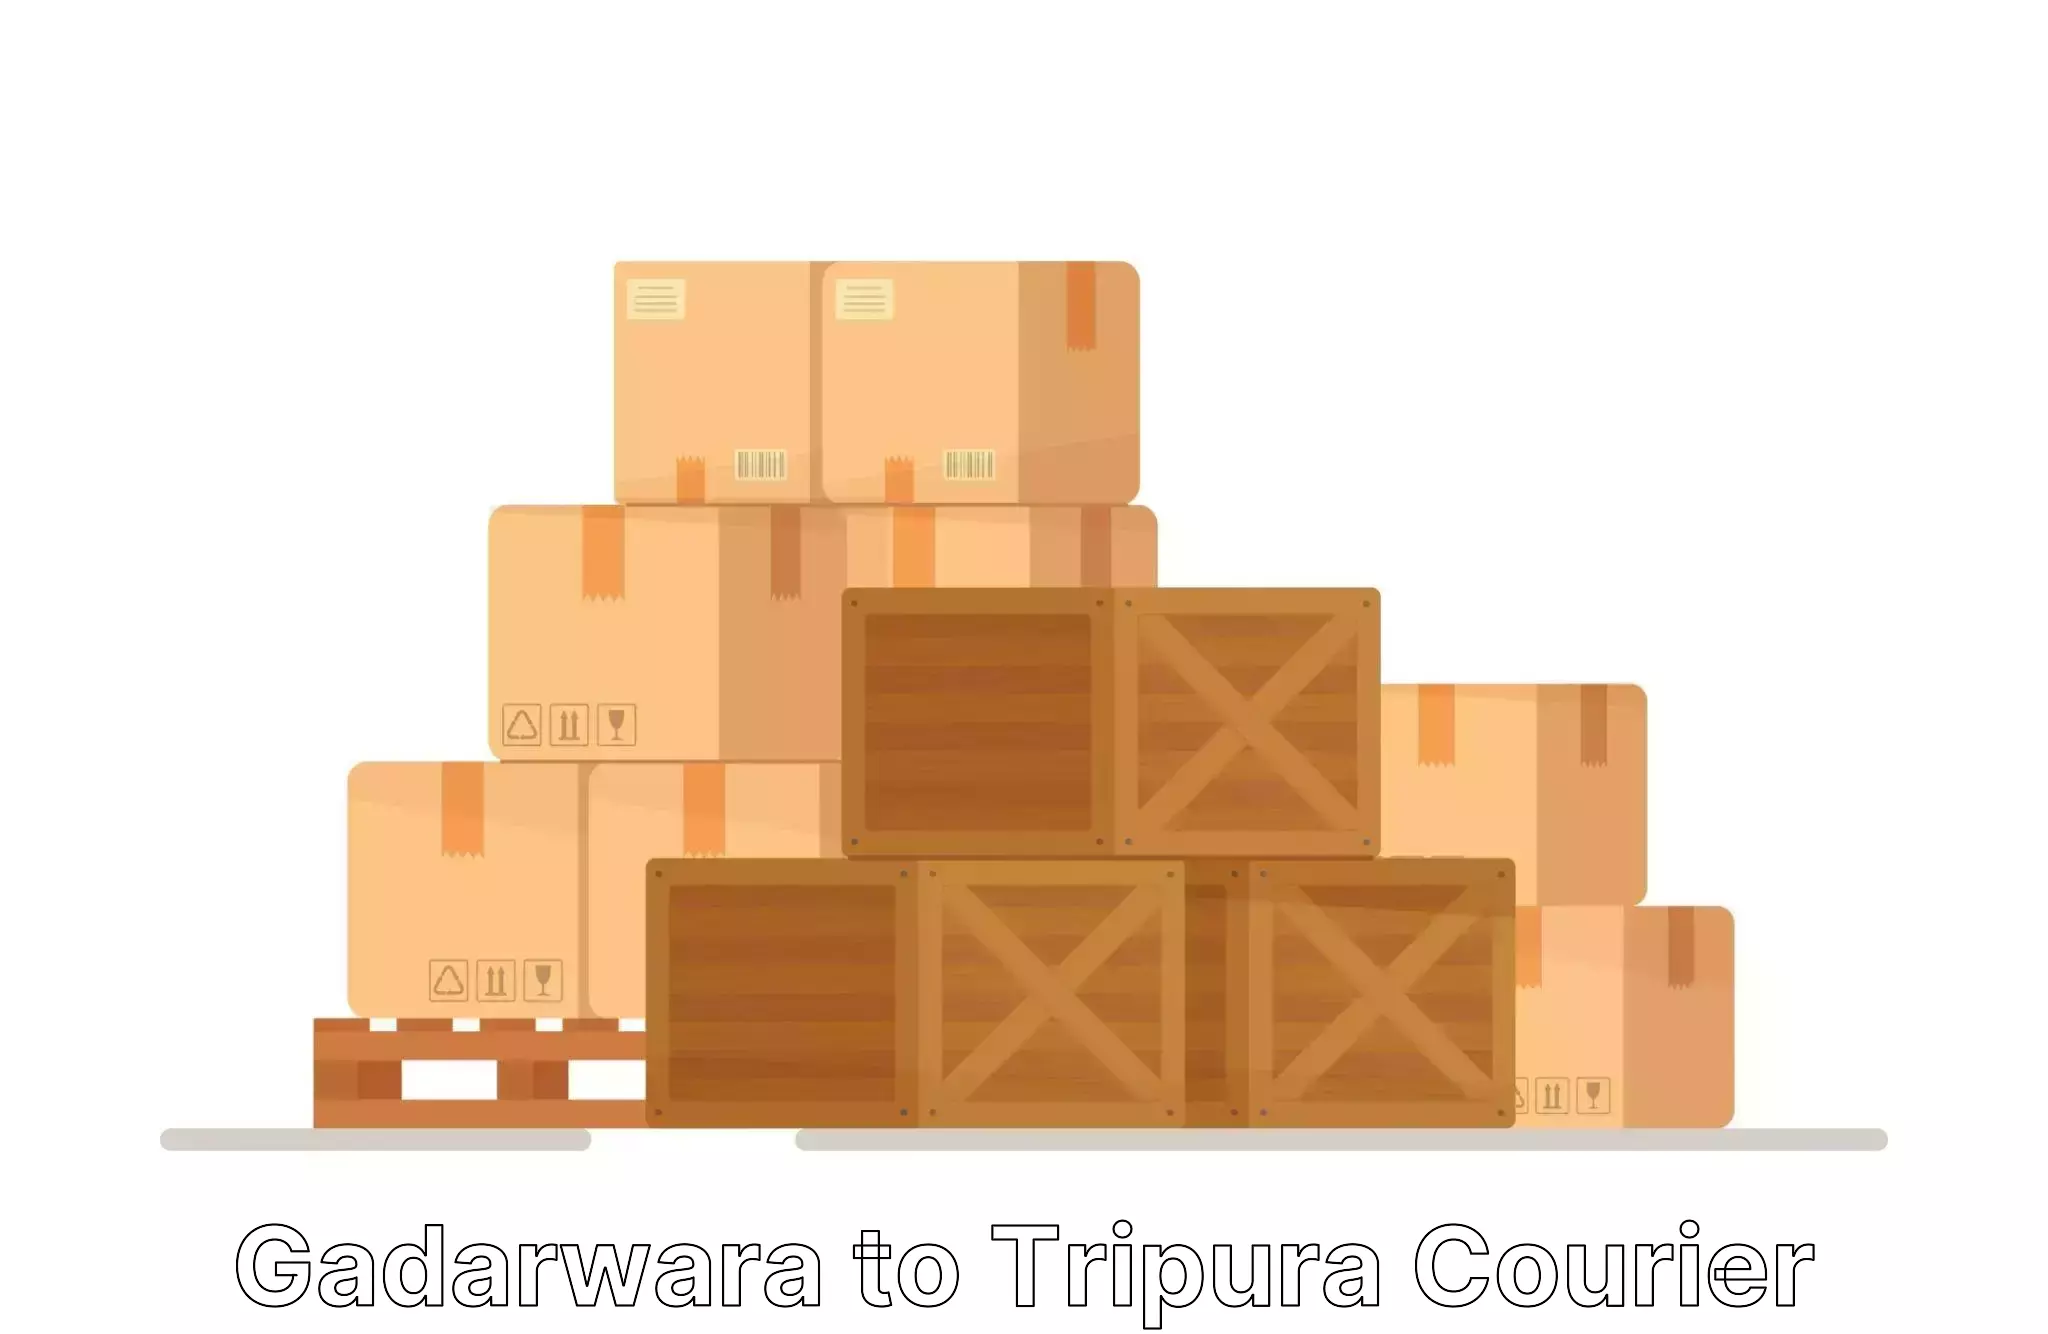 Furniture moving assistance Gadarwara to Udaipur Tripura